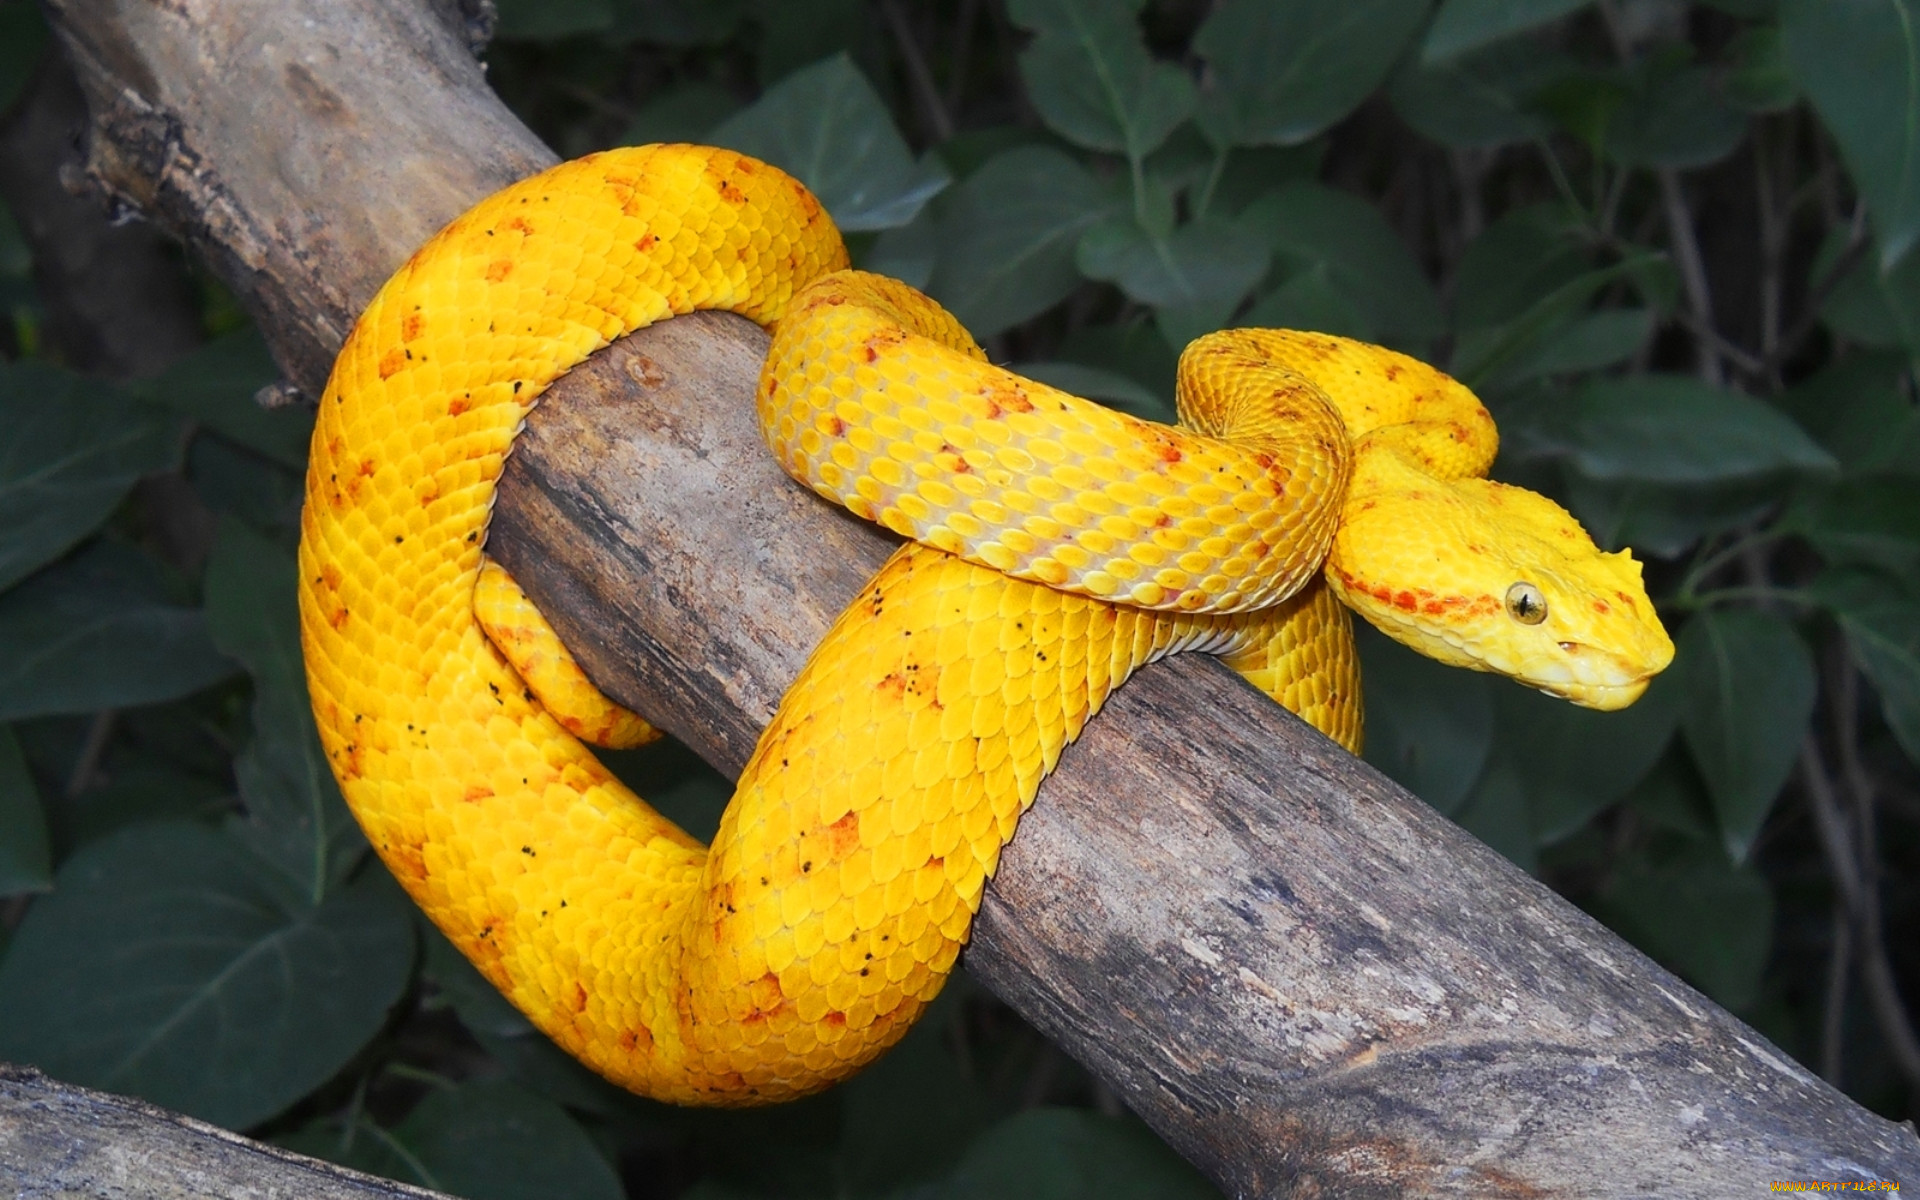 Красно желтая змея